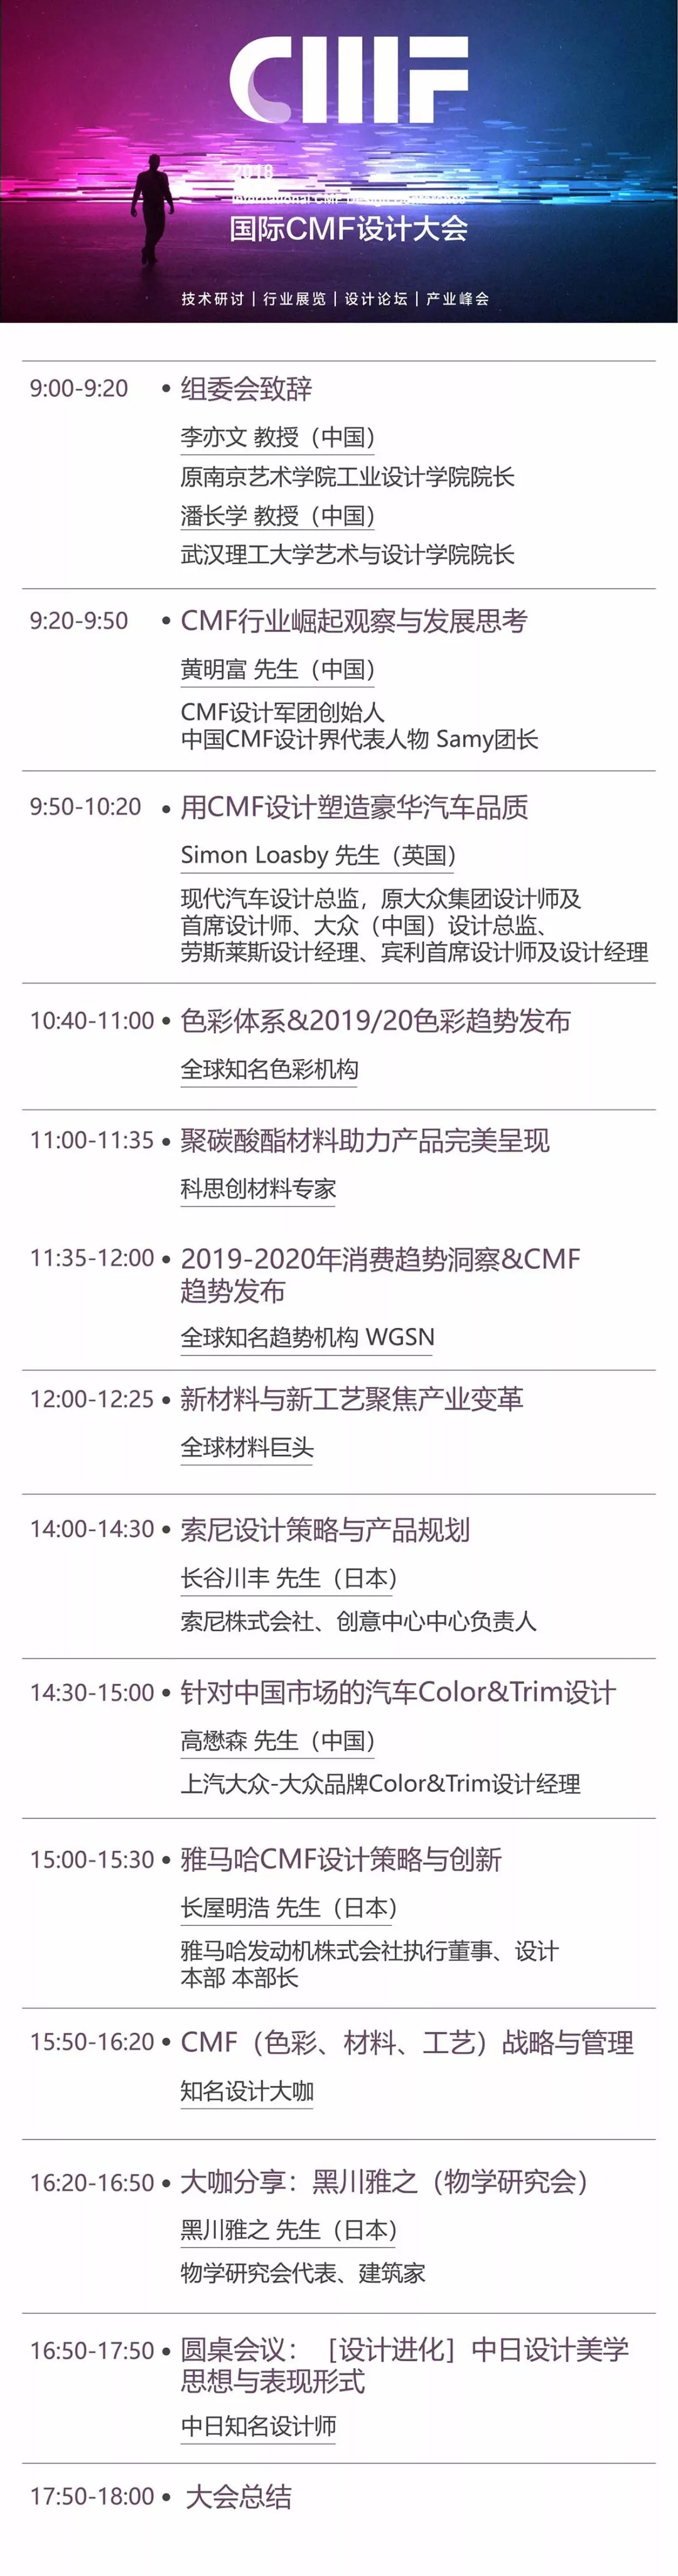 2018国际CMF设计大会